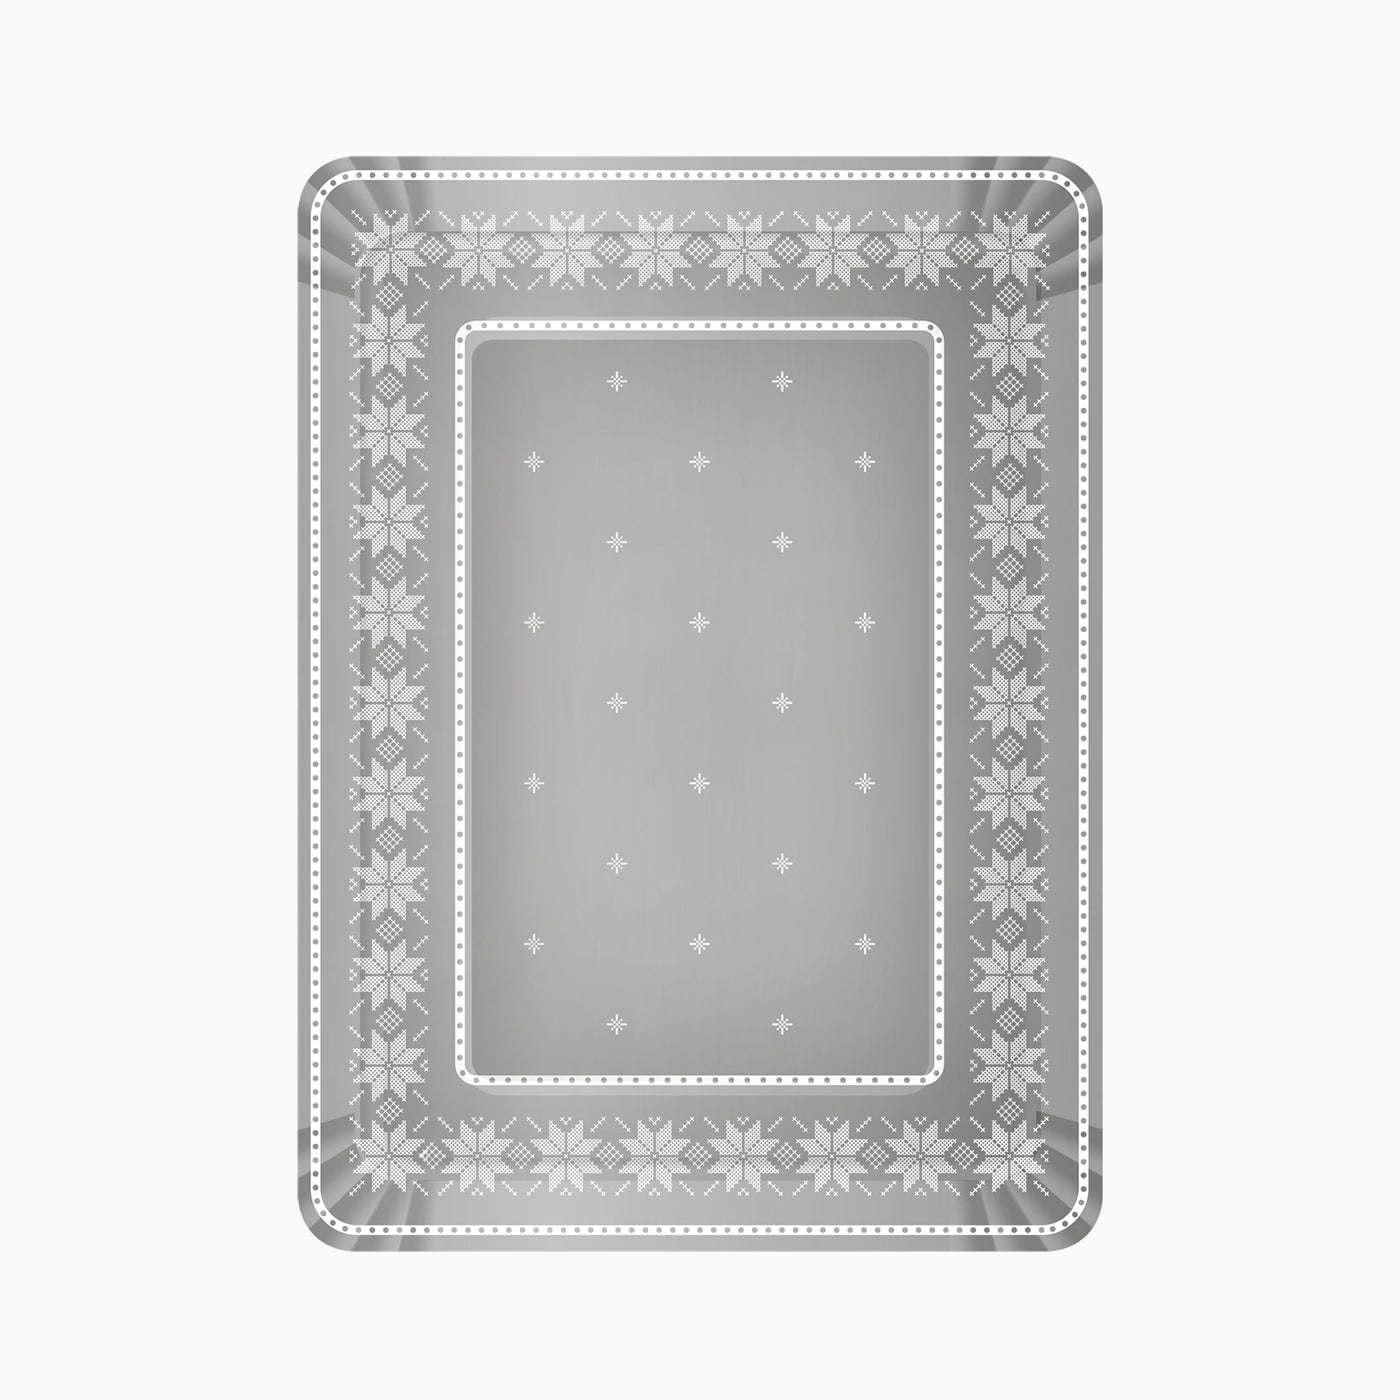 Bandeja Rectangular Navidad 25 x 34 cm Bordado Plata